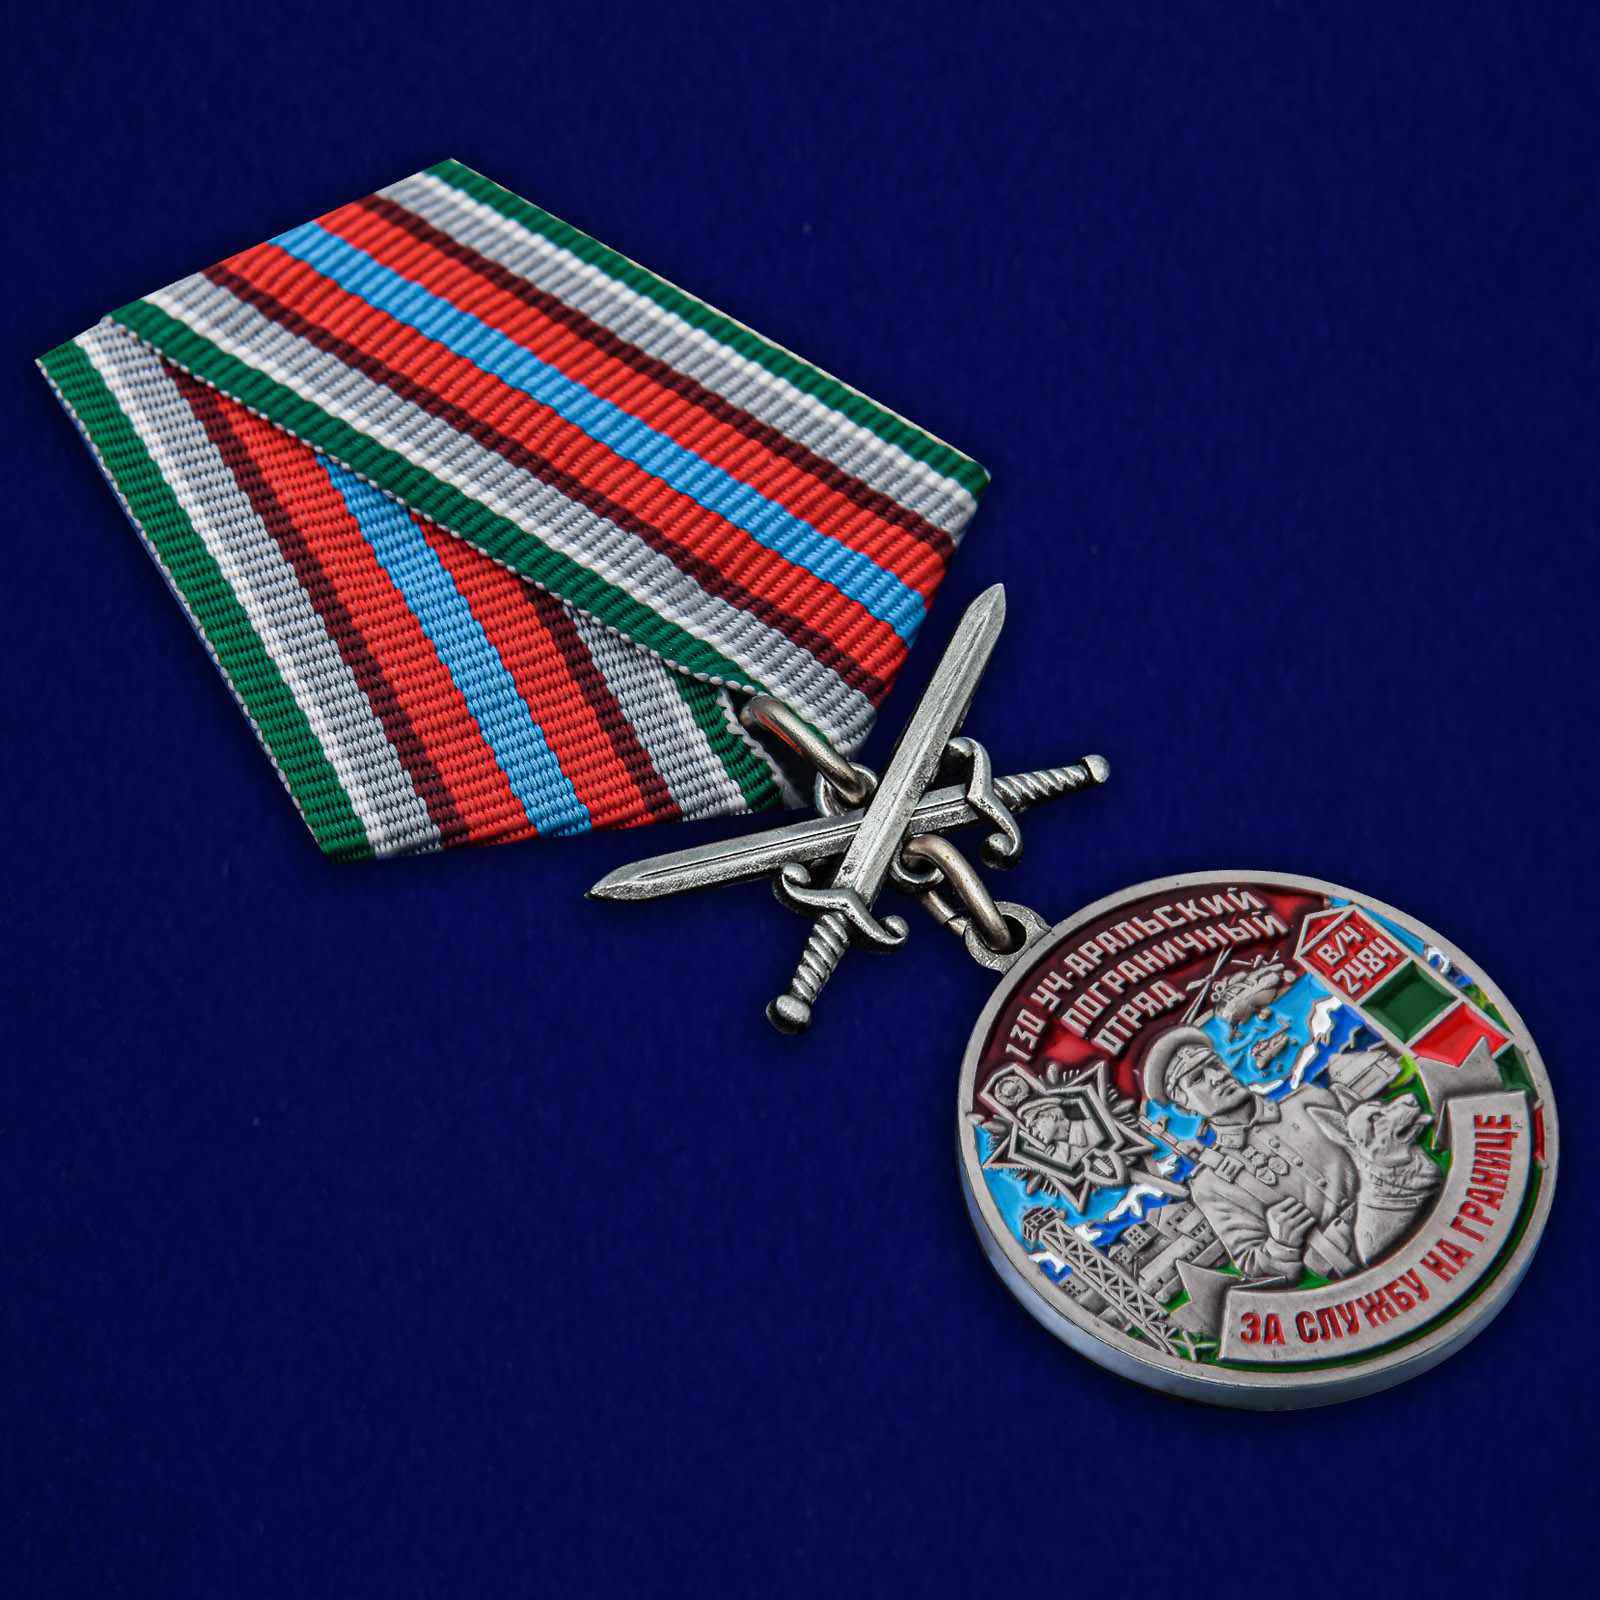 Купить медаль "За службу в Уч-Аральском пограничном отряде"